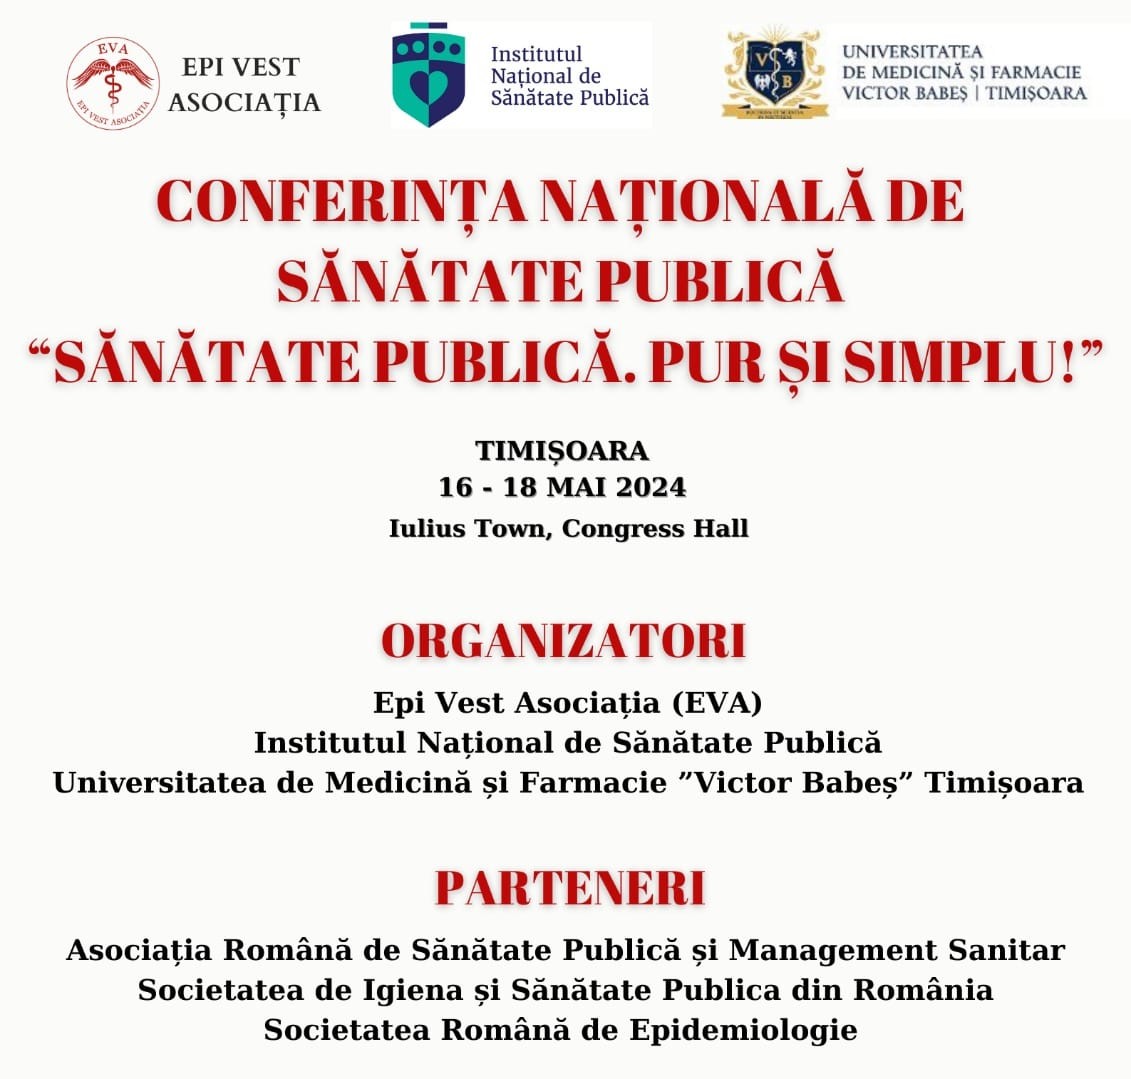 Conferința Națională de Sănătate Publică va avea loc în perioada 16 - 18 mai 